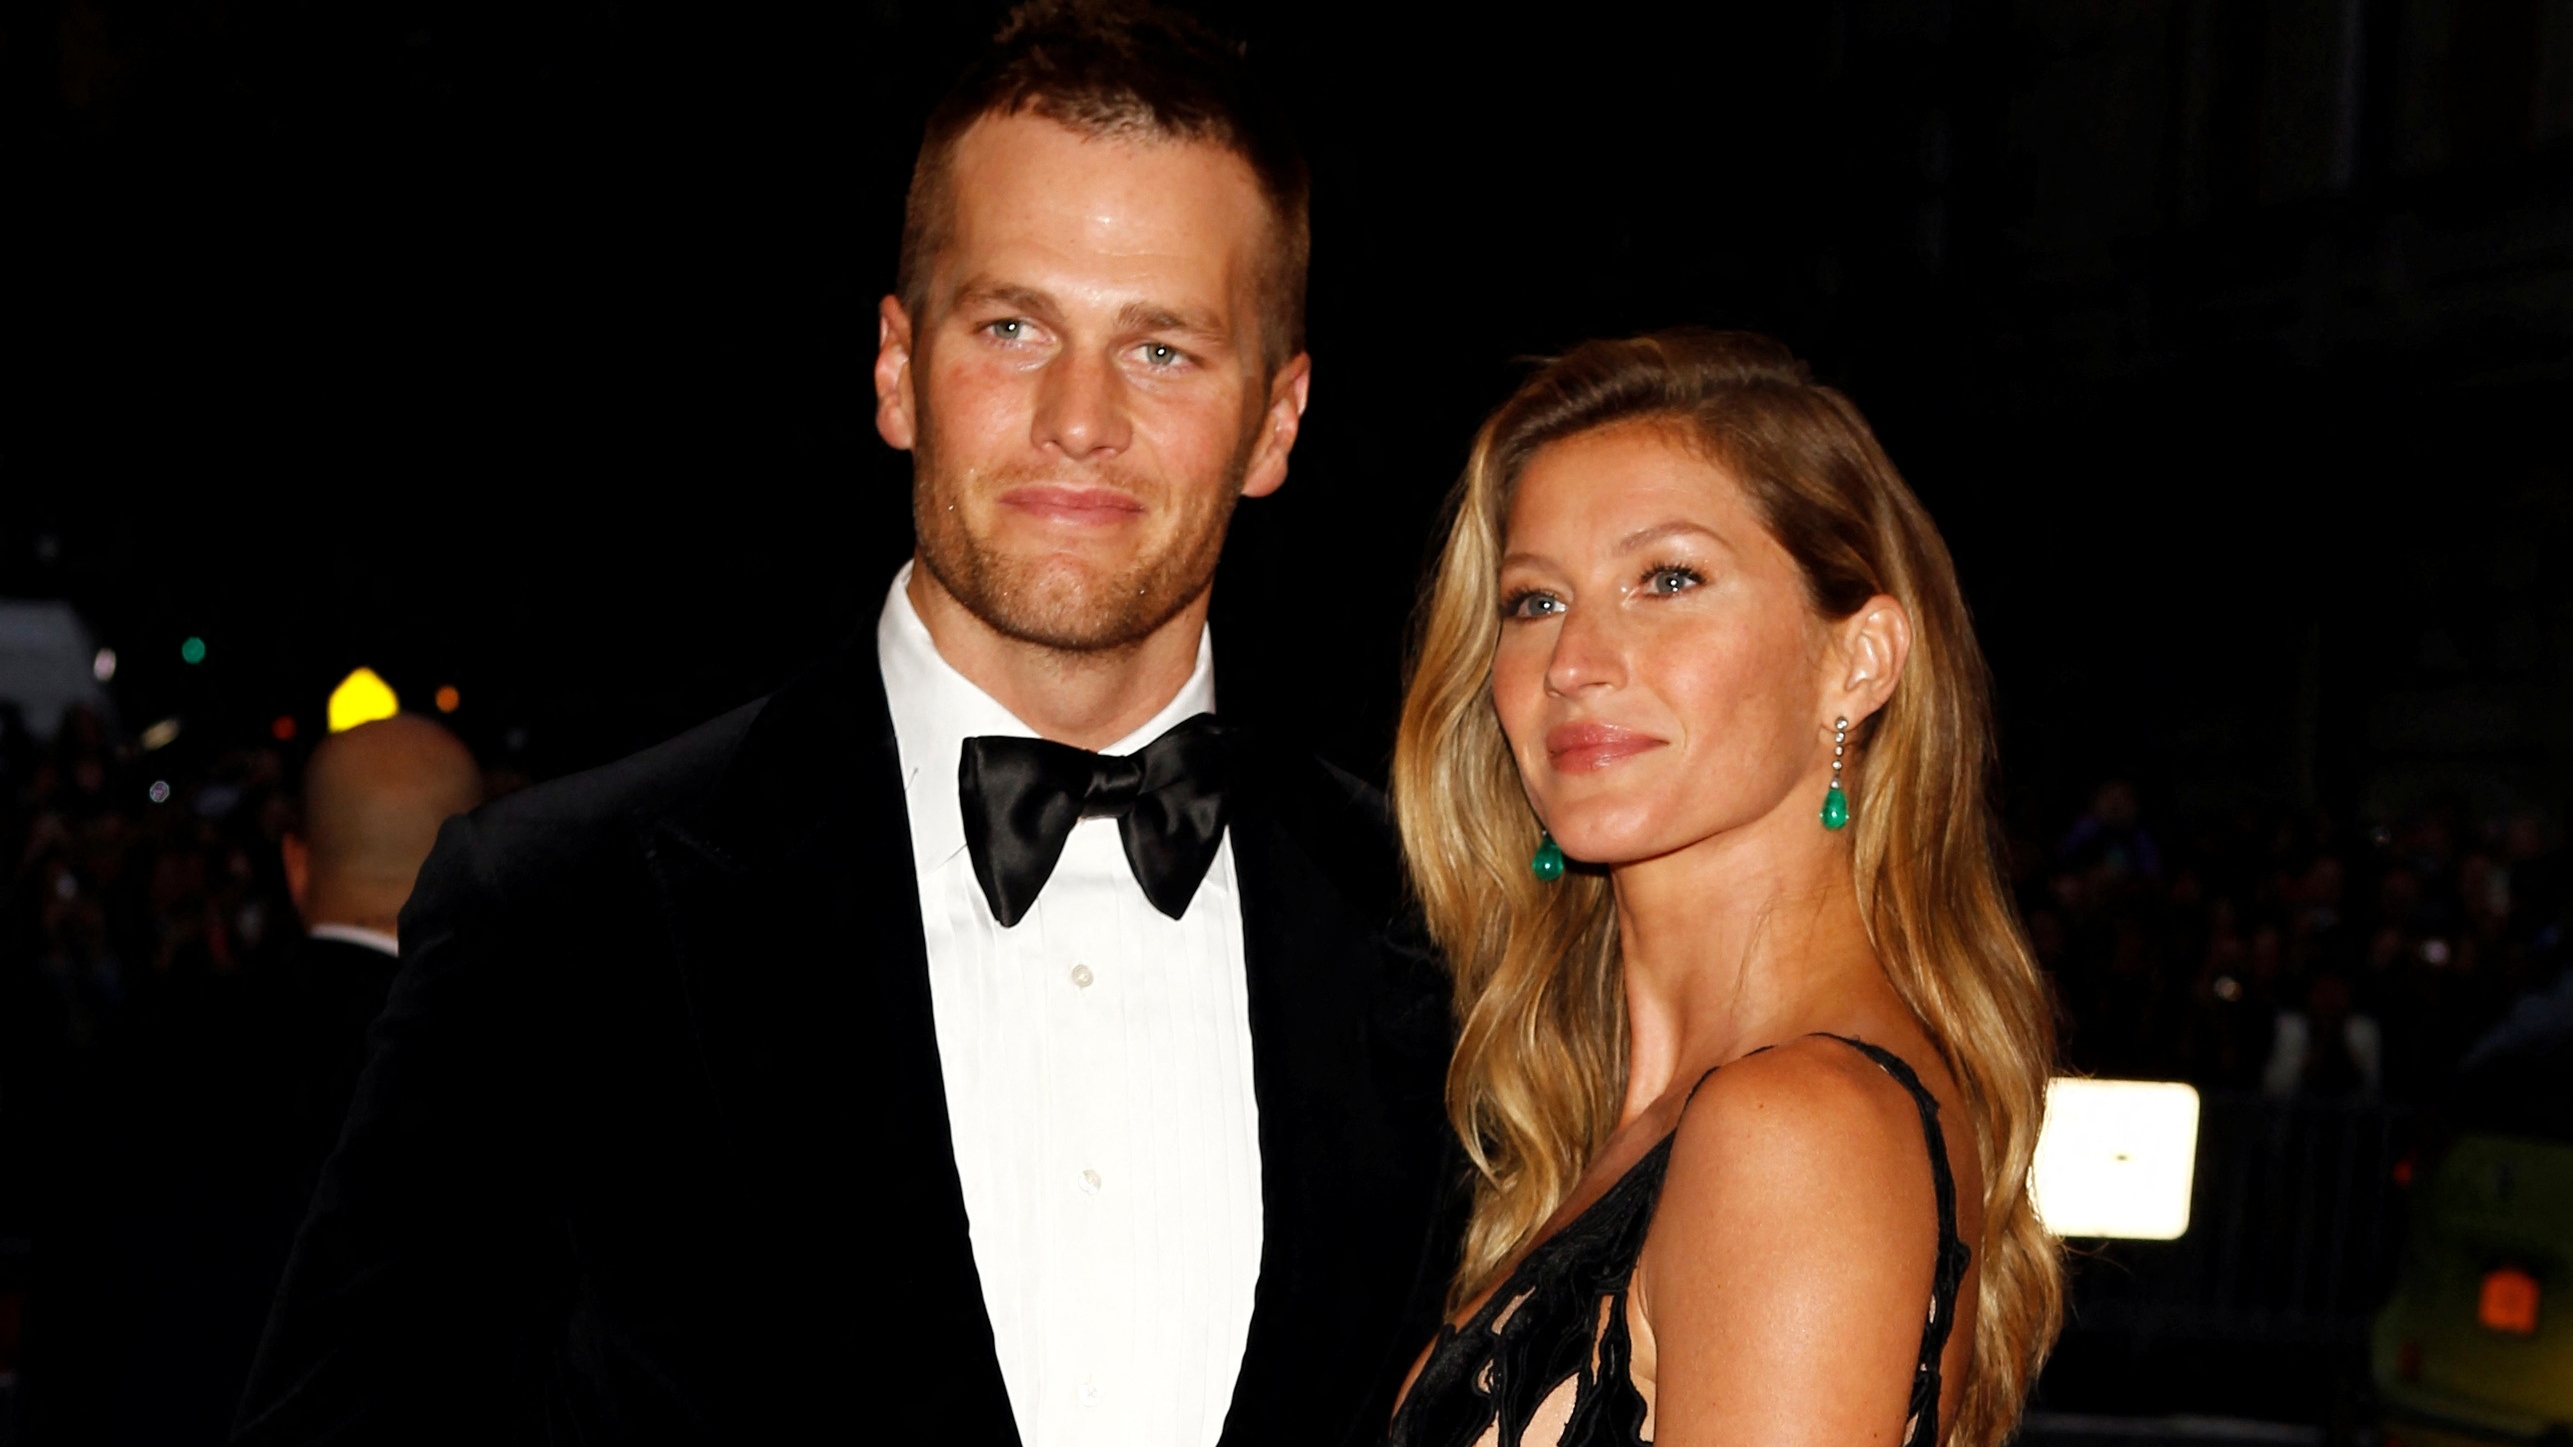 Tom Brady y Gisele Bündchen confirmaron su divorcio luego de 13 años de matrimonio - Infobae